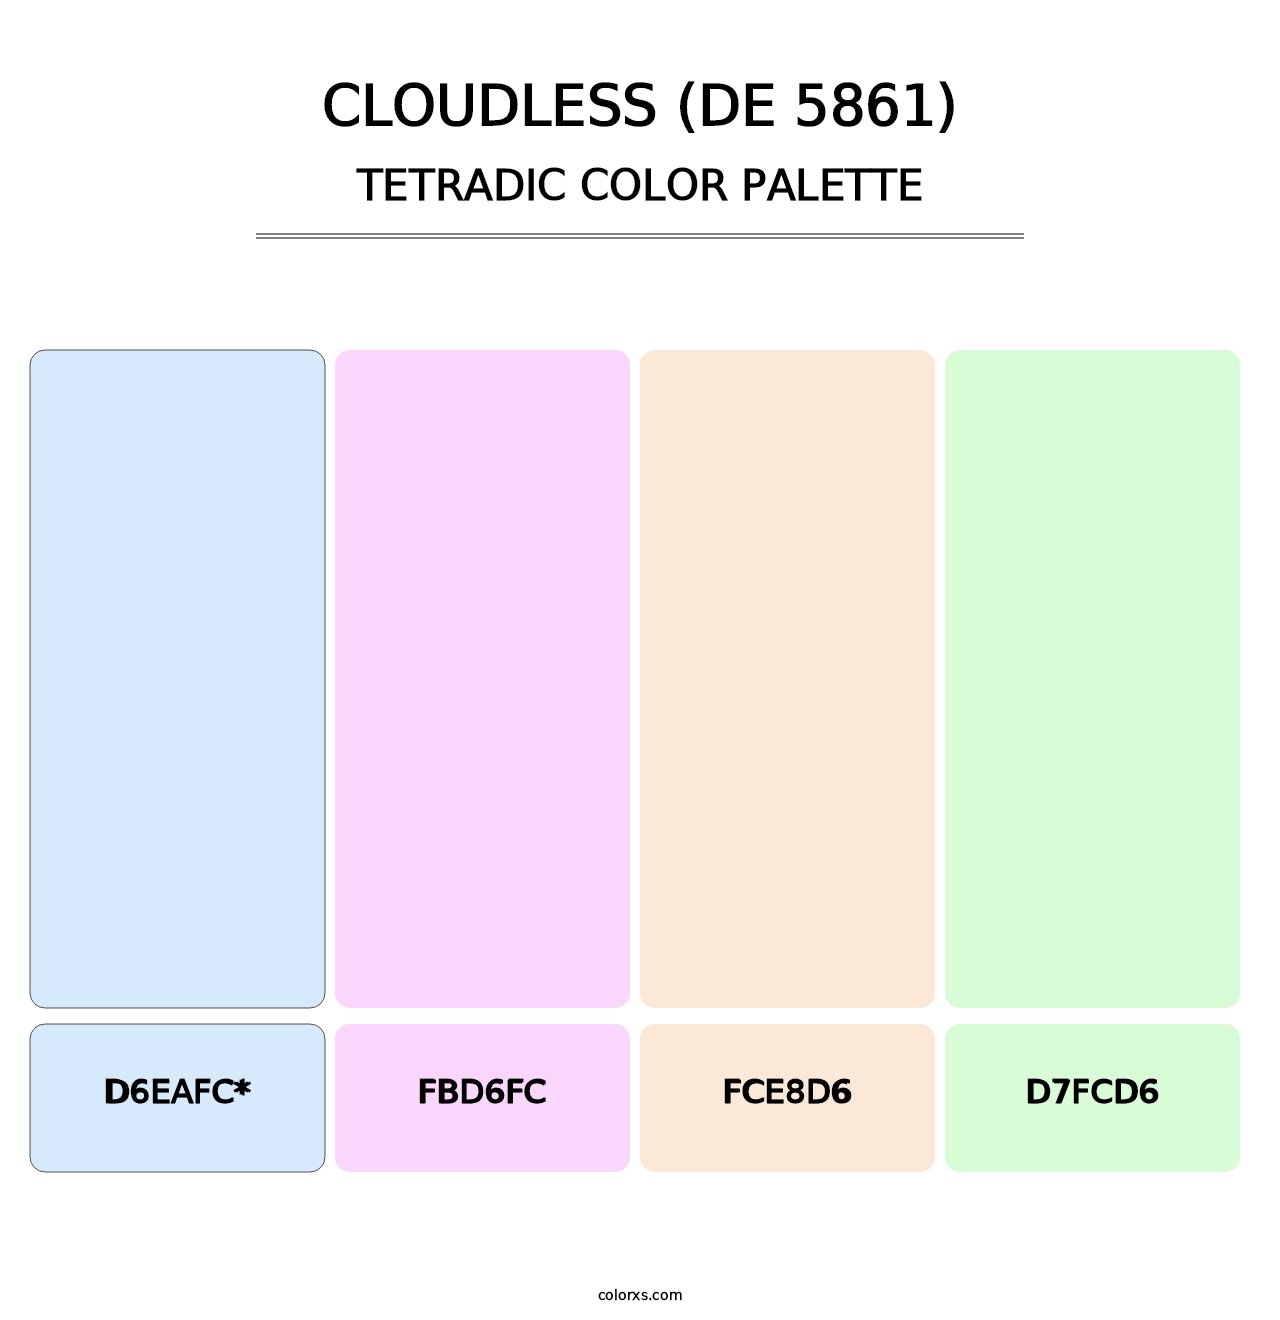 Cloudless (DE 5861) - Tetradic Color Palette